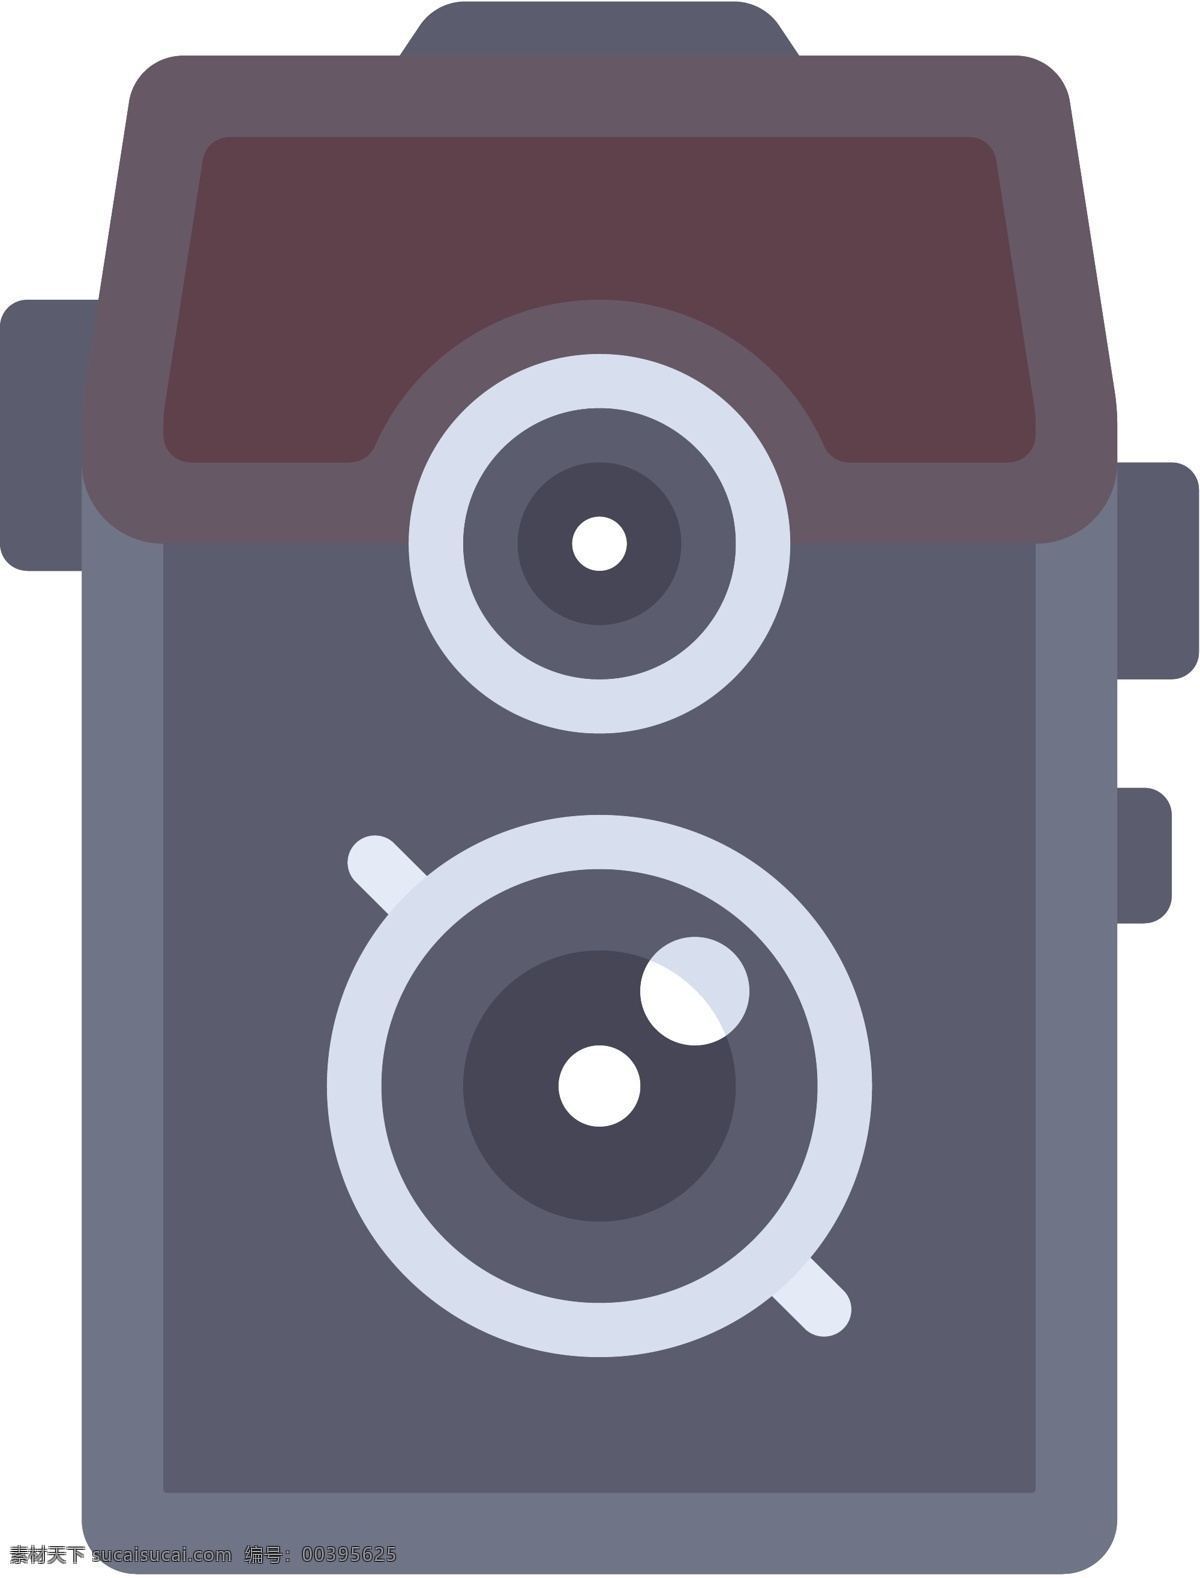 录影机 icon 图标 线性 扁平 手绘 单色 多色 简约 精美 可爱 商务 圆润 方正 立体 相机 录像机